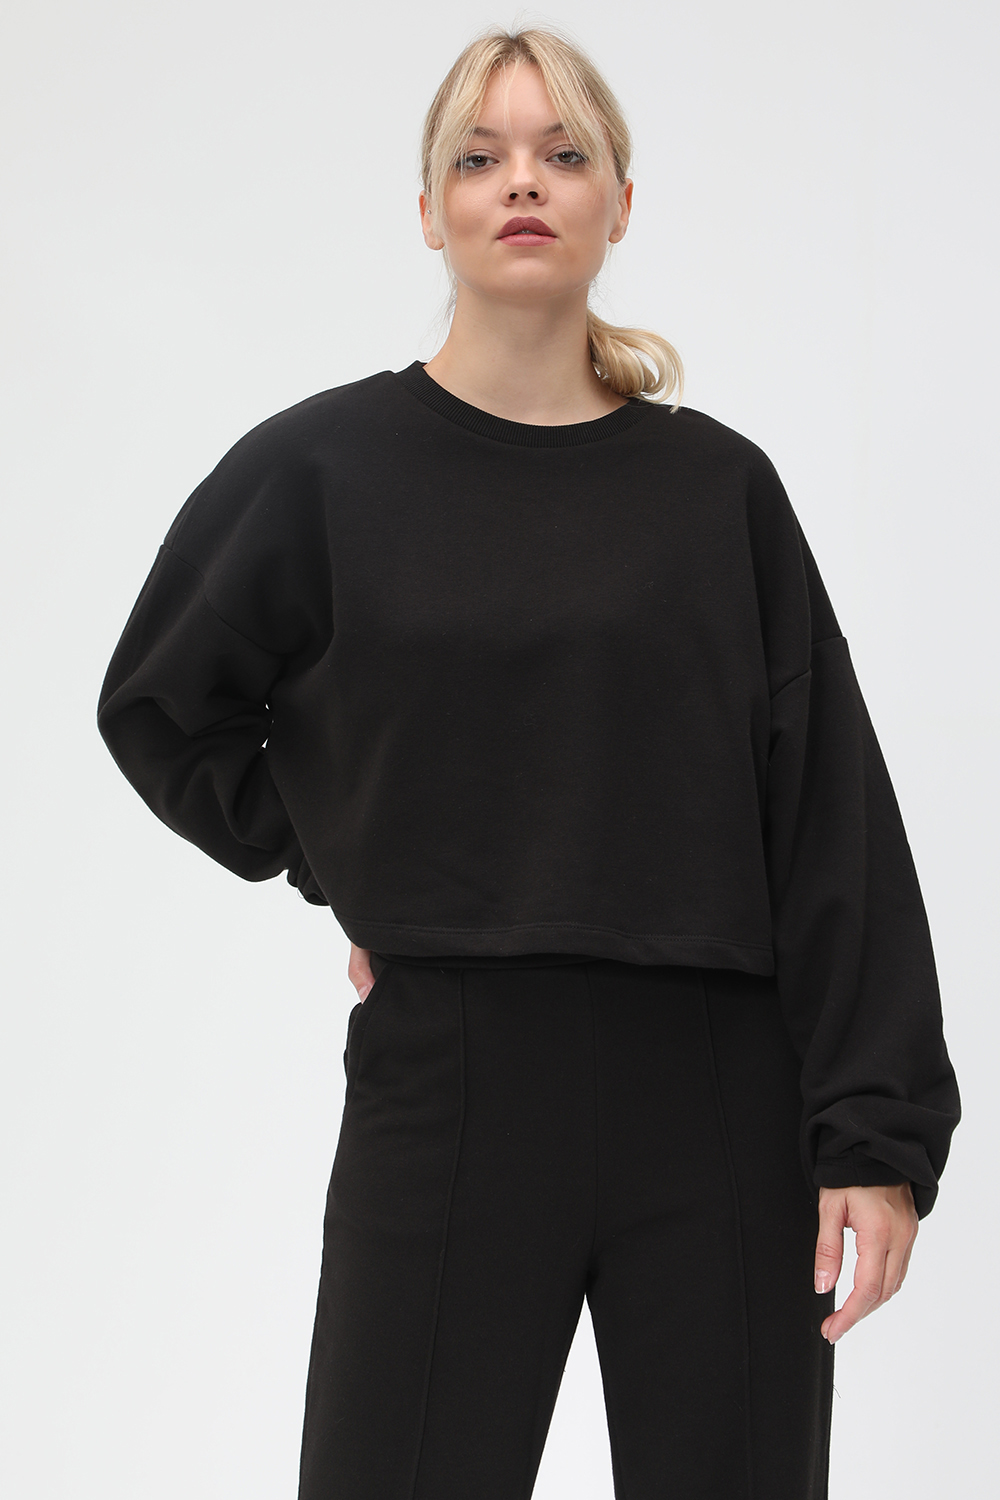 Γυναικεία/Ρούχα/Μπλούζες/Φούτερ NA-KD - Γυναικεία cropped φούτερ μπλούζα NA-KD μαύρη